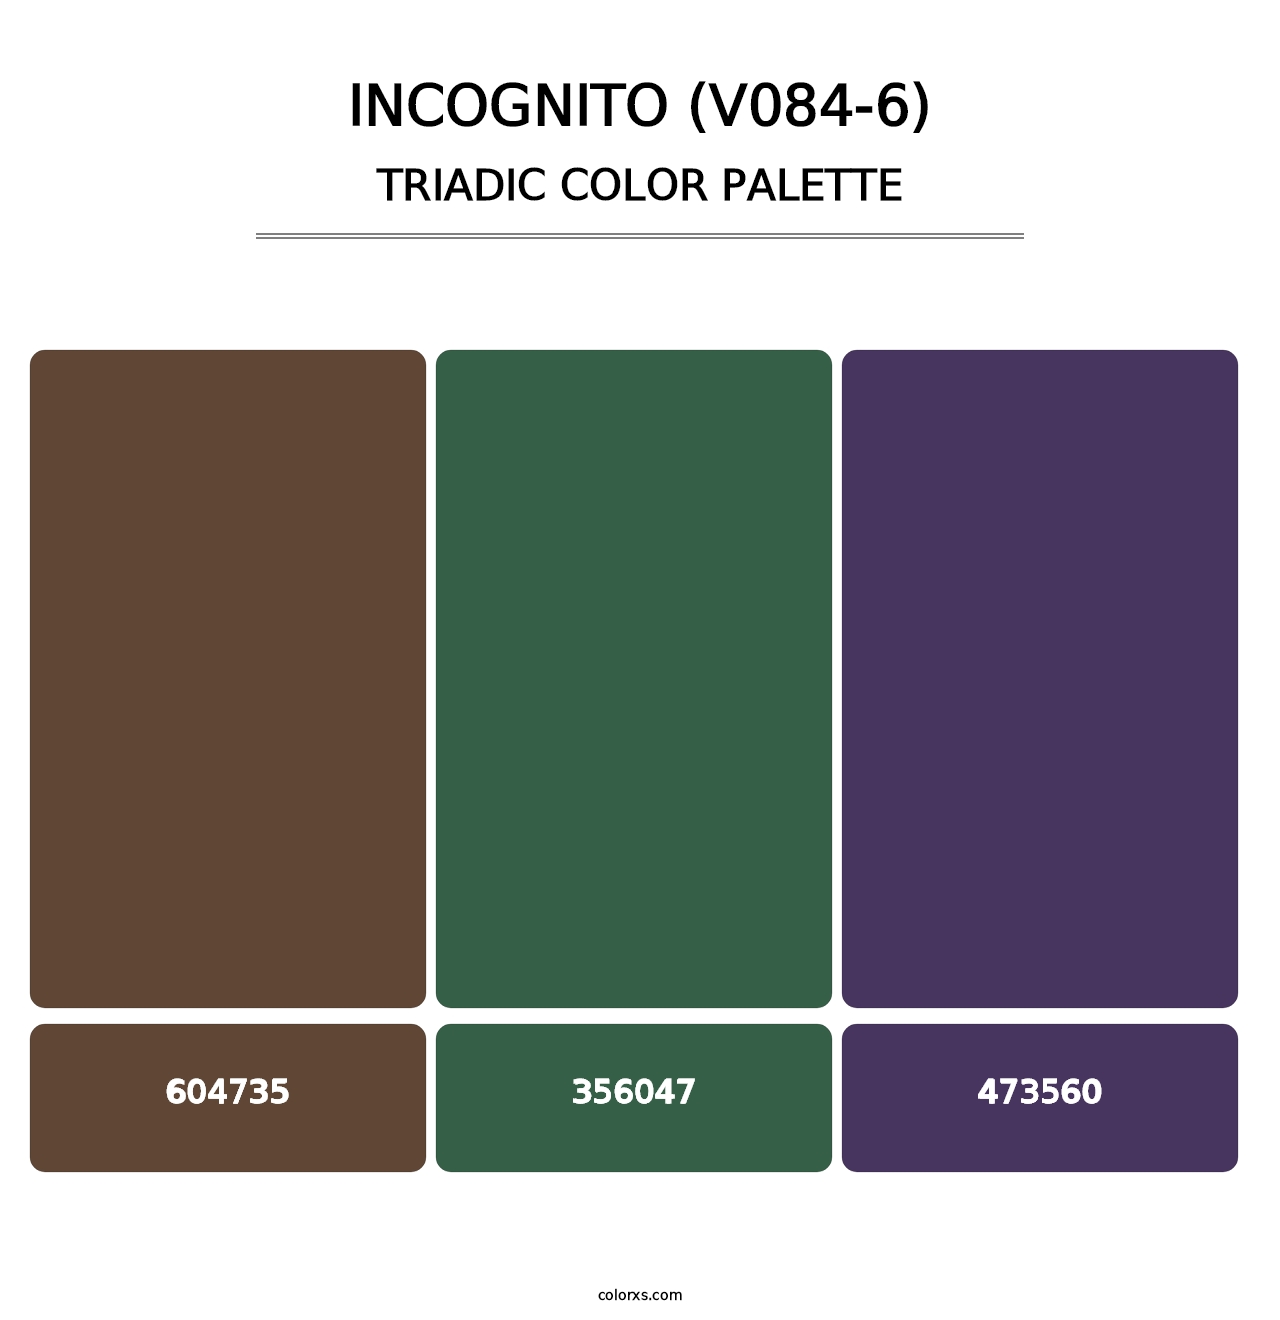 Incognito (V084-6) - Triadic Color Palette